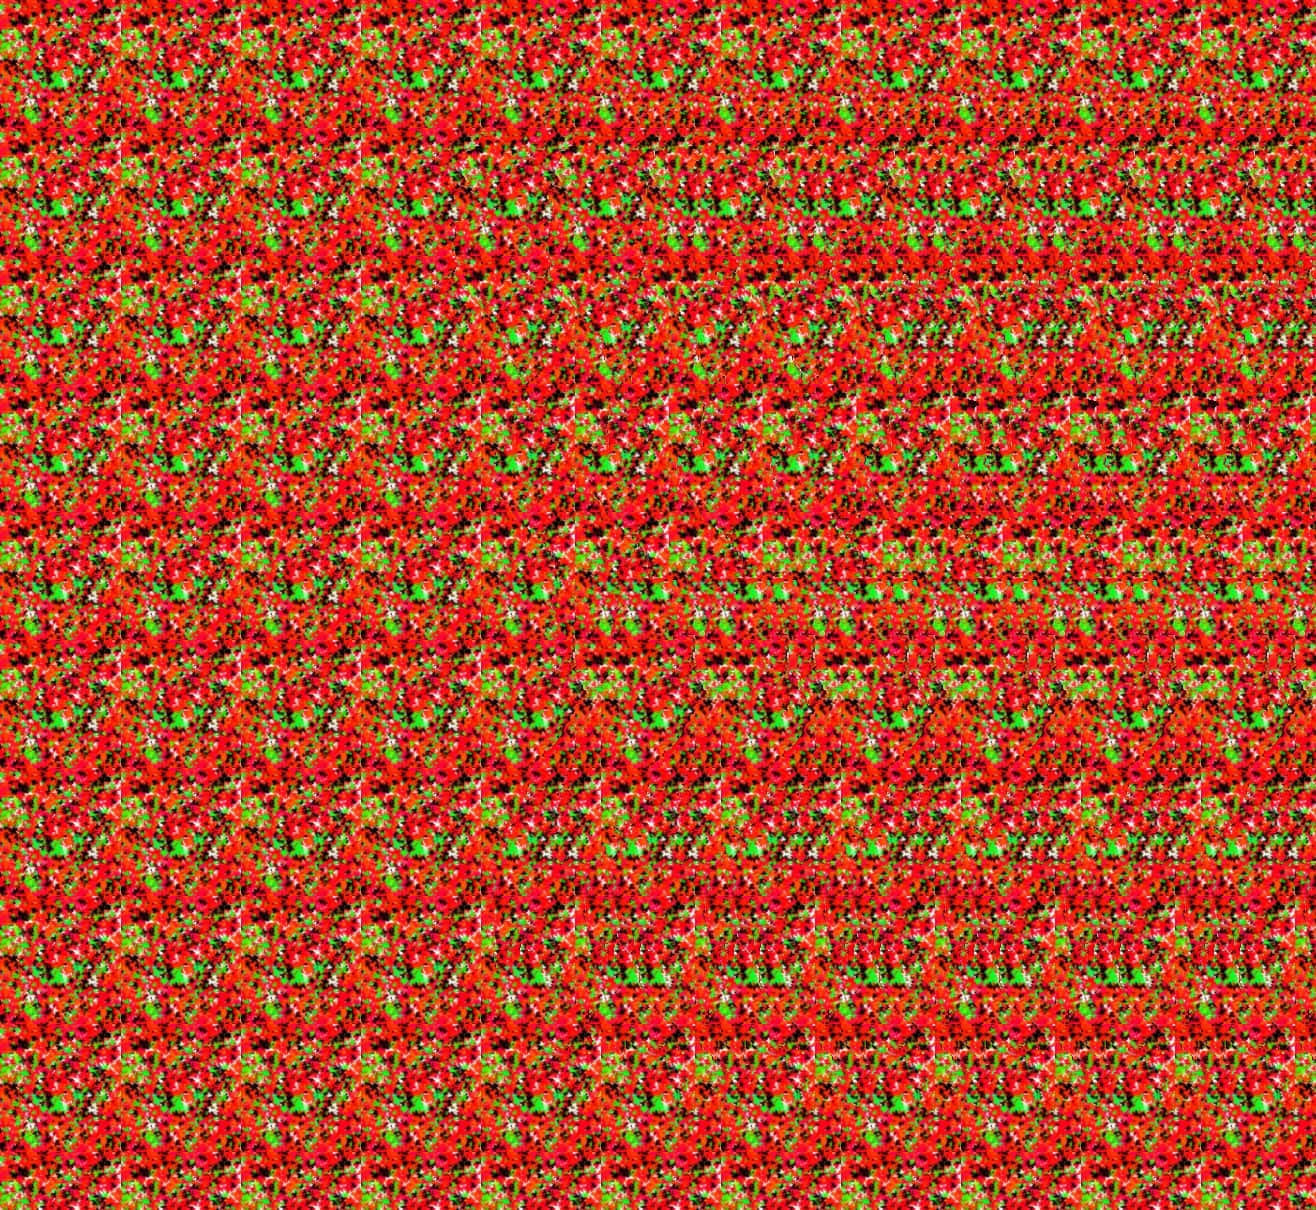 Etrødt Og Grønt Mønster Med Mange Små Røde Og Grønne Prikker.